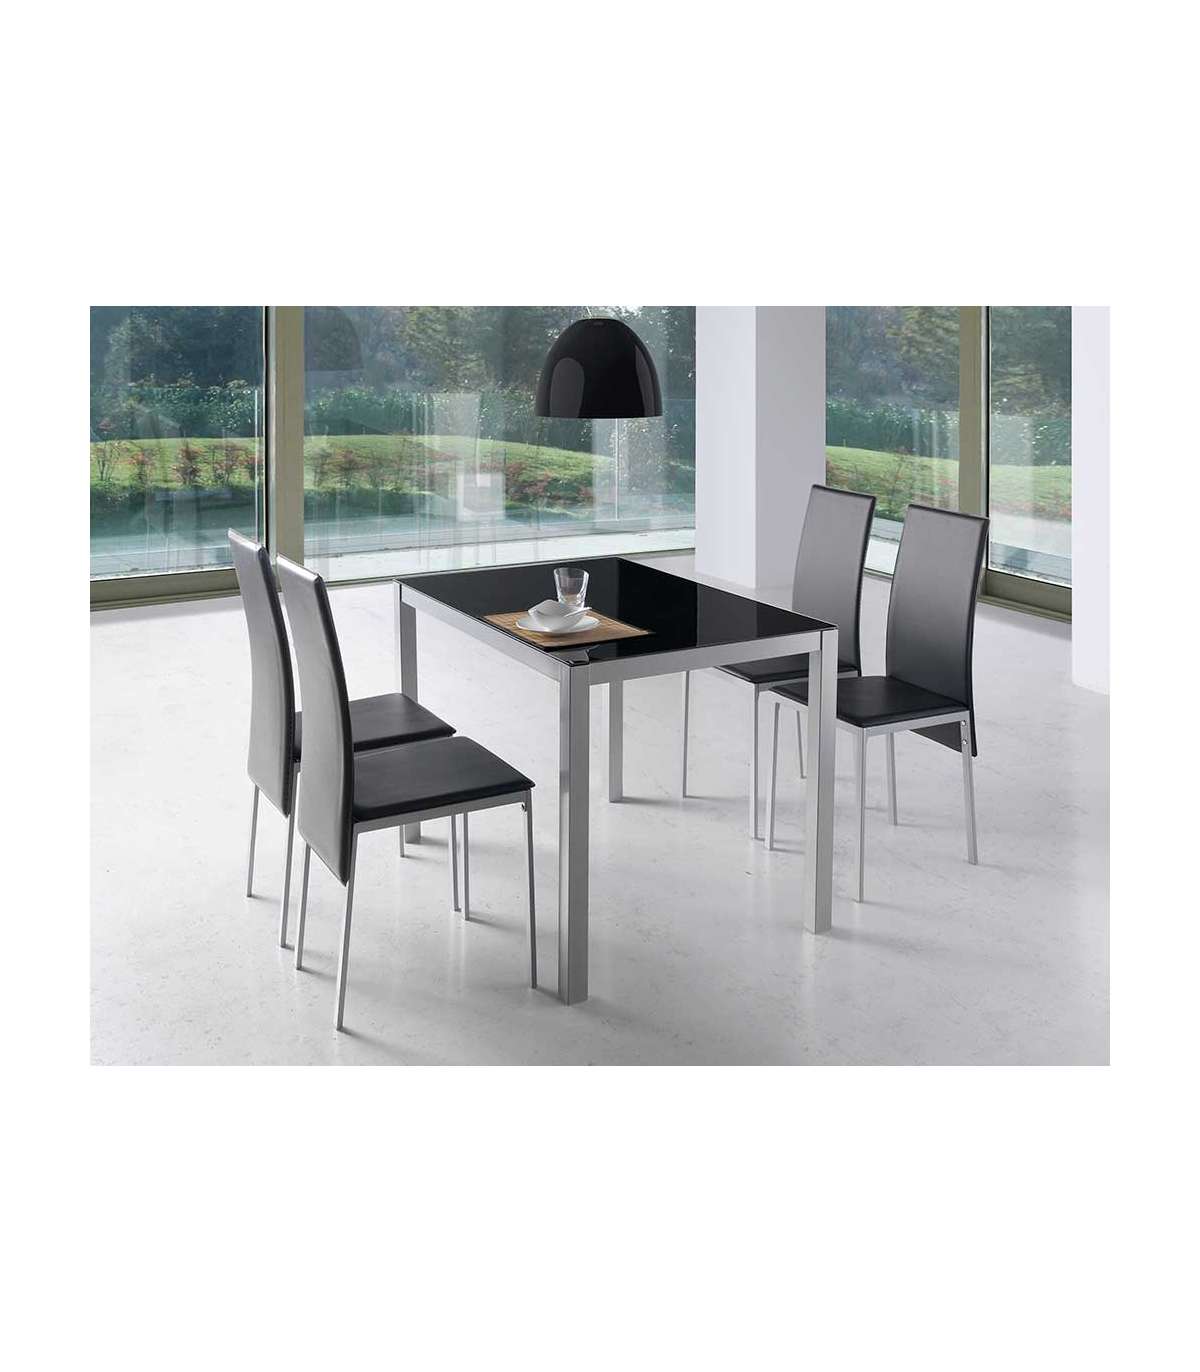 Mesa de cocina con 4 sillas barata, color blanco y negro, barato y  funcional.